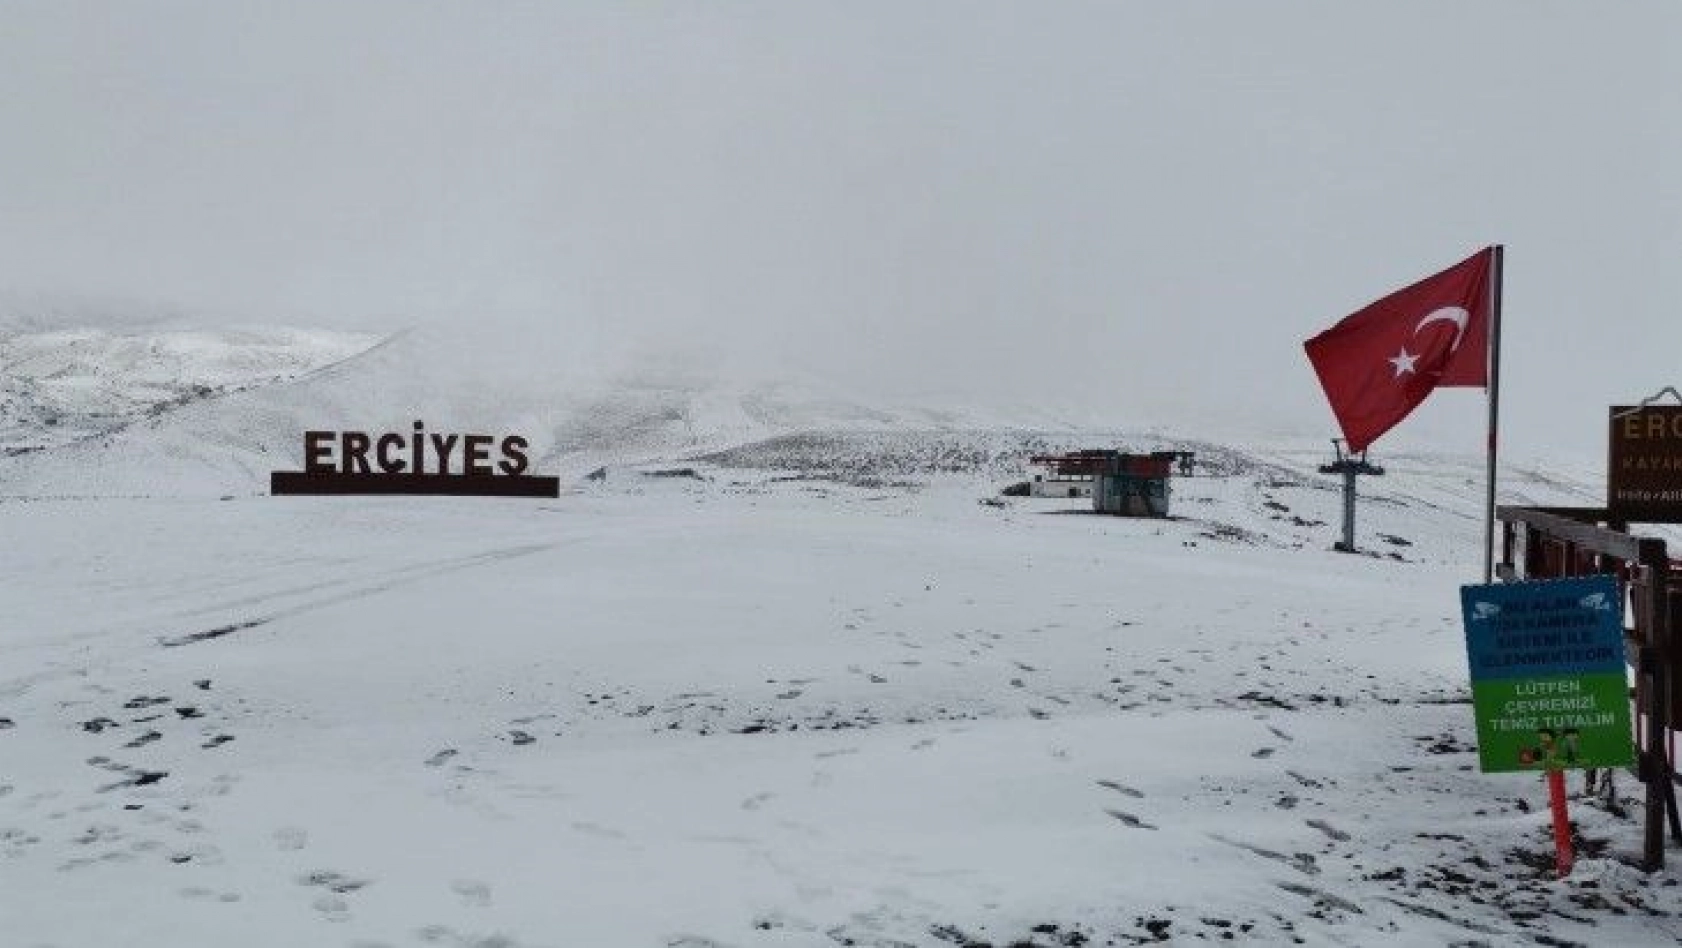 Kayseri'de sezonun ilk kardan adamı Erciyes'te yapıldı